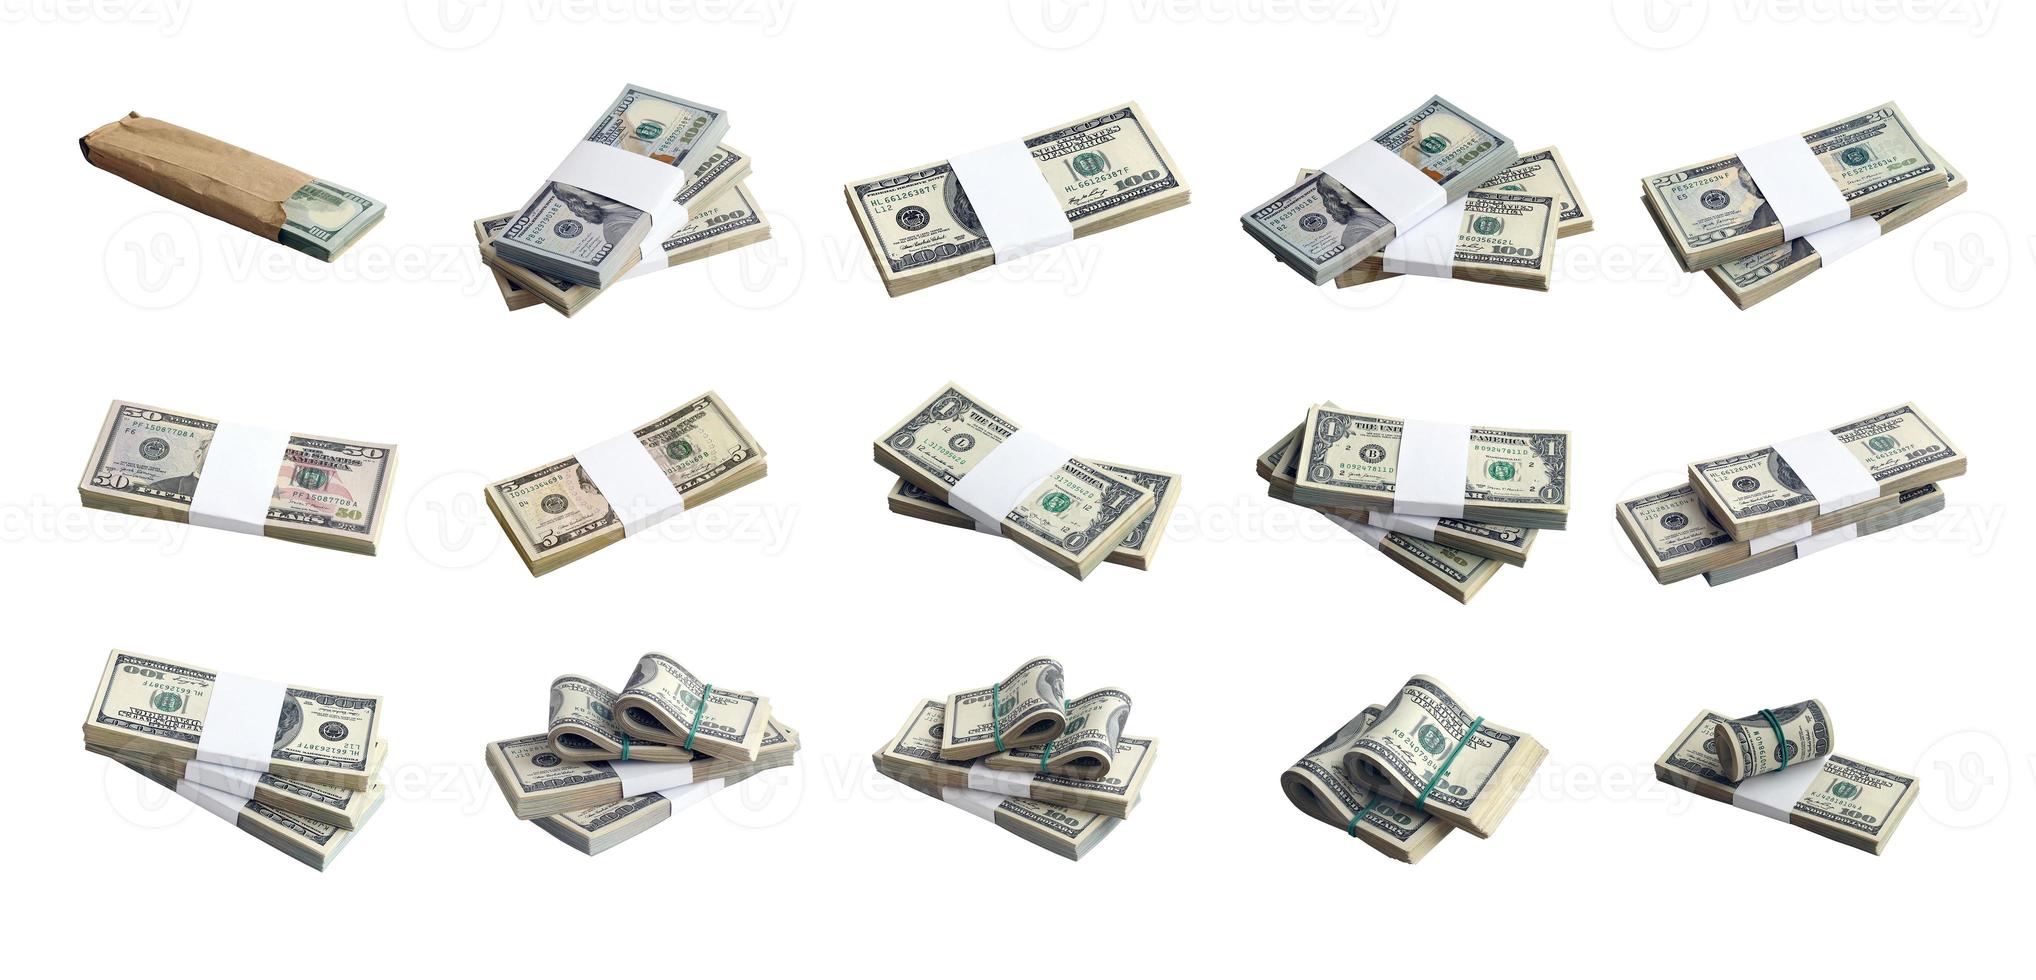 gran conjunto de fajos de billetes de dólar estadounidense aislados en blanco. collage con muchos paquetes de dinero americano con alta resolución en un fondo blanco perfecto foto